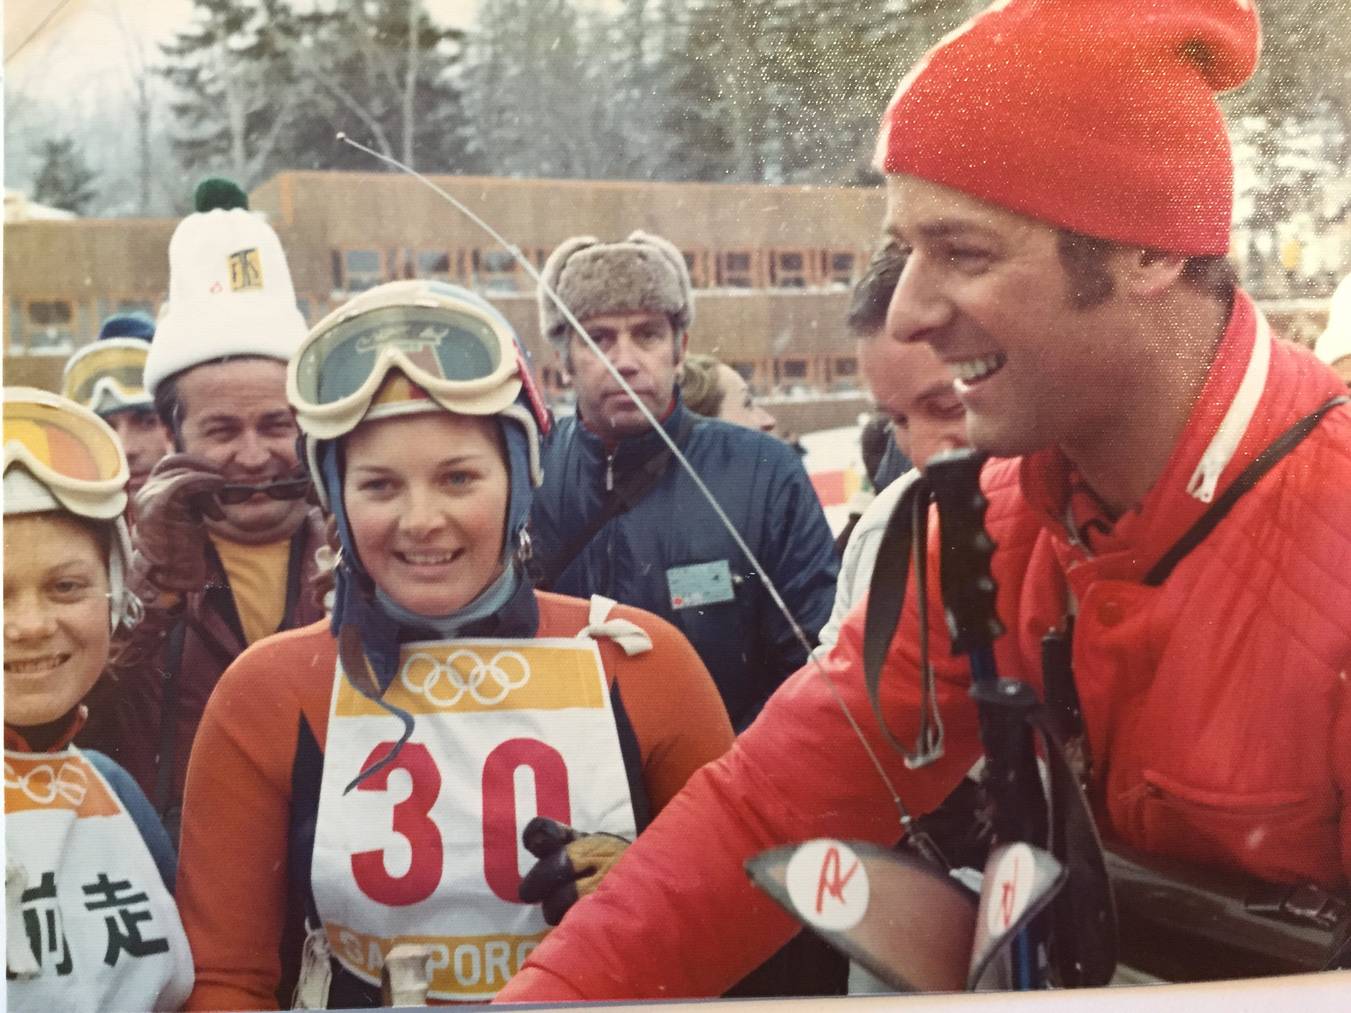 Martha Bühler (Startnummer 30) mit Adolf Ogi in Sapporo, 15 Jahre bevor er Bundesrat wurde (Bild: FM1Today/Dario Cantieni)